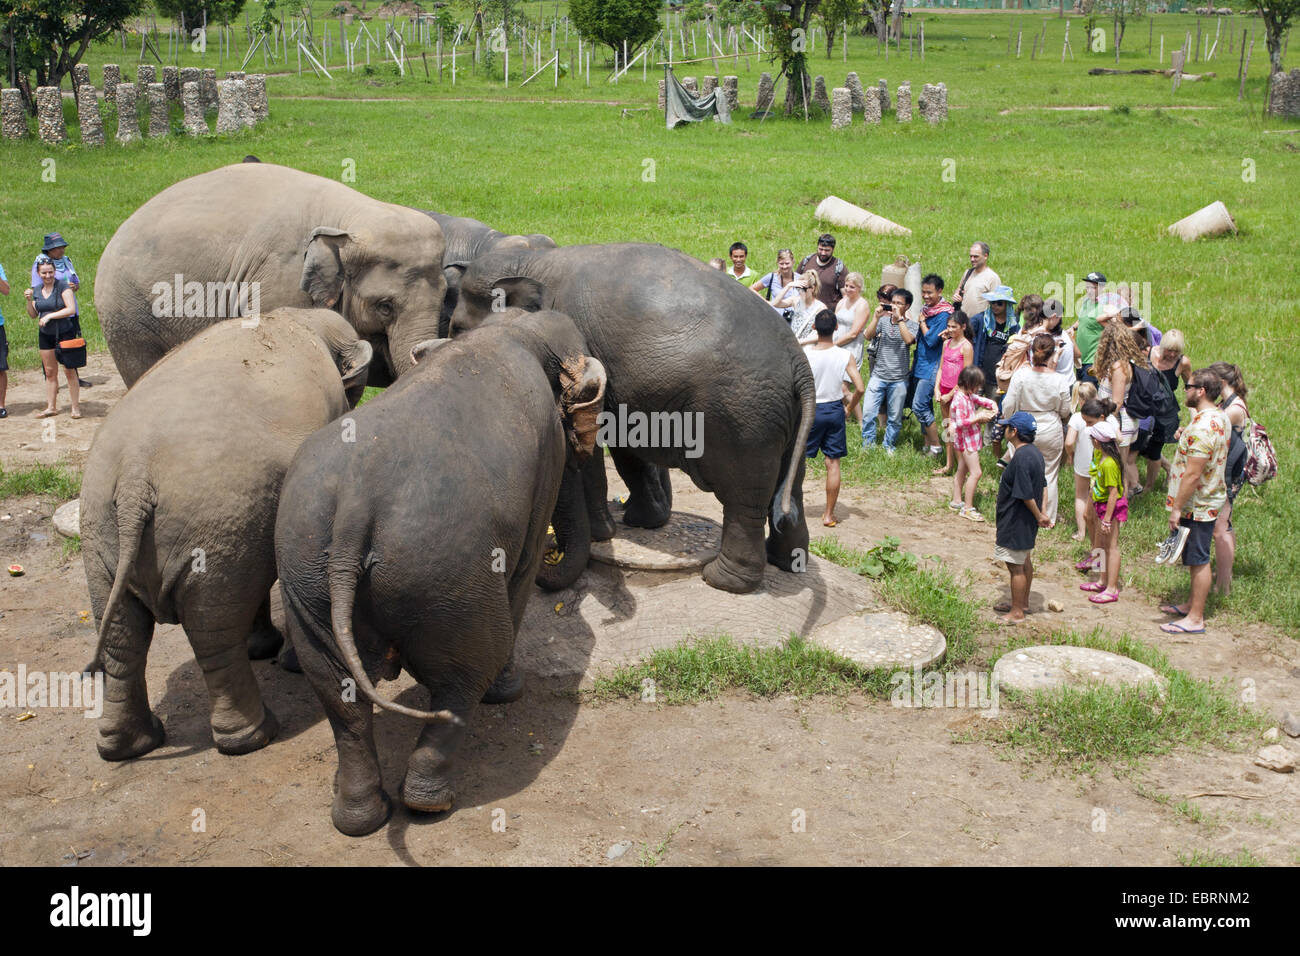 L'éléphant d'Asie, l'éléphant d'Asie (Elephas maximus), les touristes ainsi que les éléphants dans un parc naturel, la Thaïlande, l'Elephant Nature Park, Chiang Mai Banque D'Images